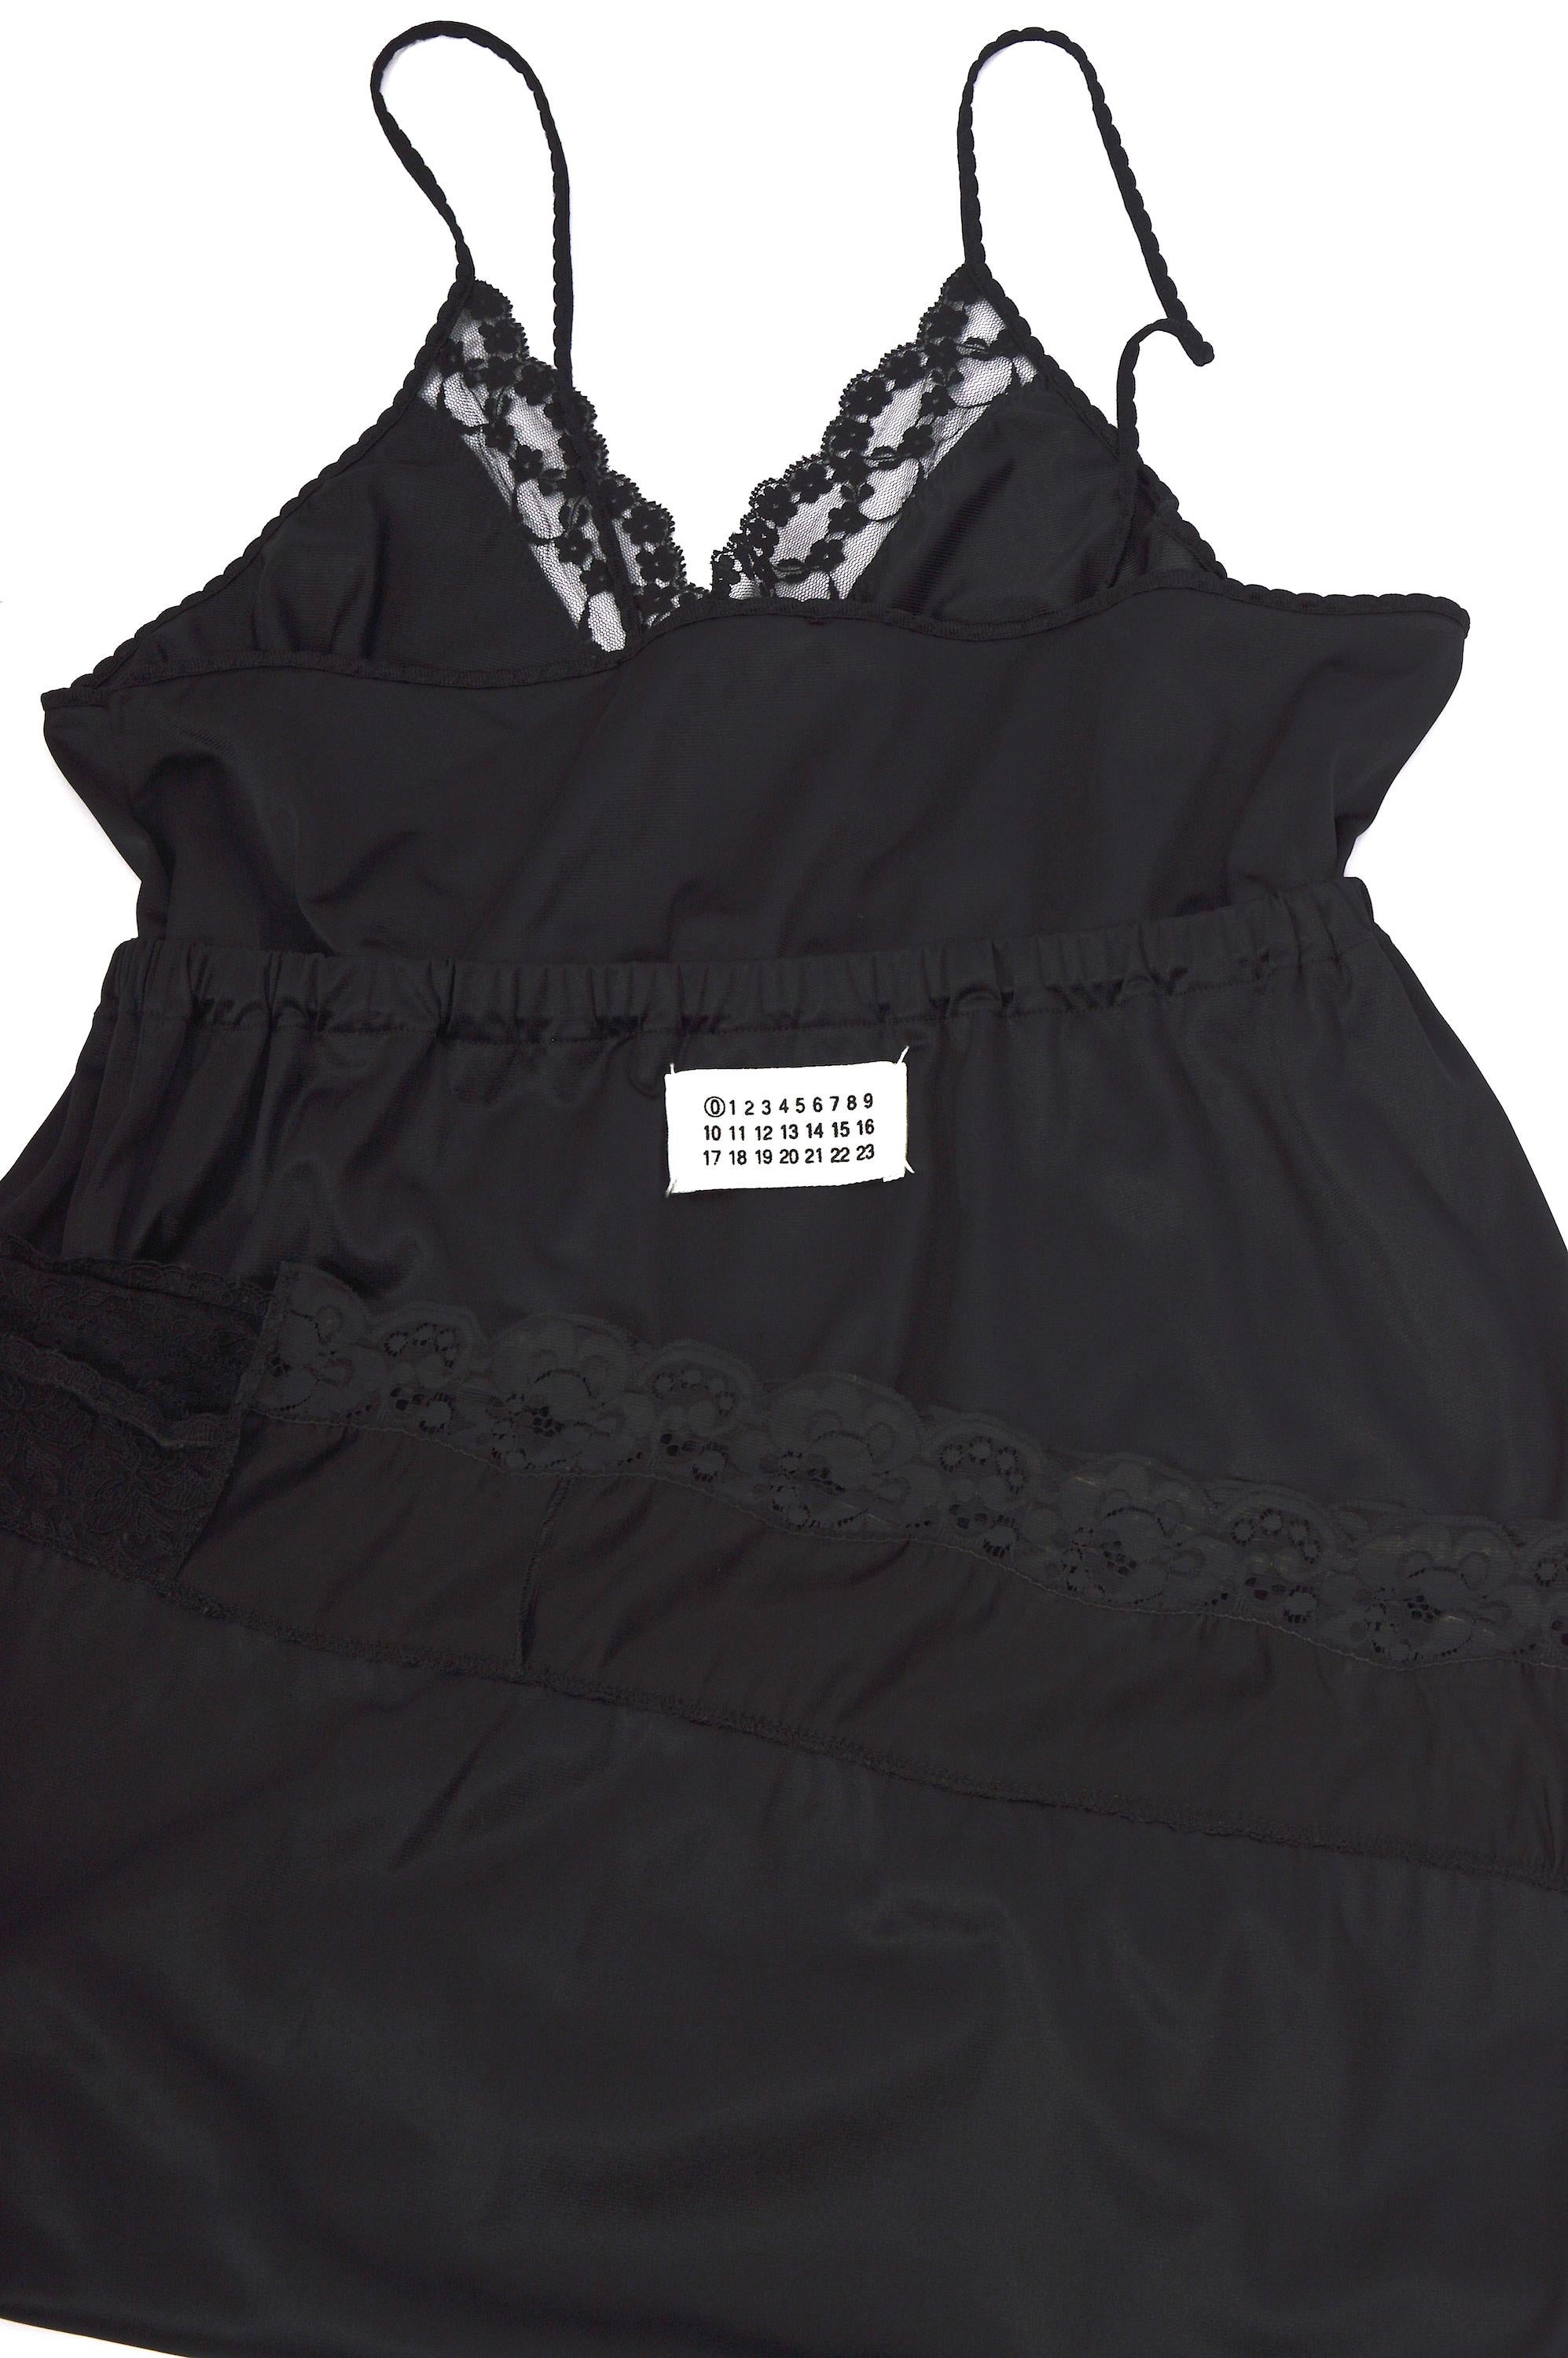 Vintage Martin Margiela artisanal ss 2003 runway black folded dress skirt For Sale 10